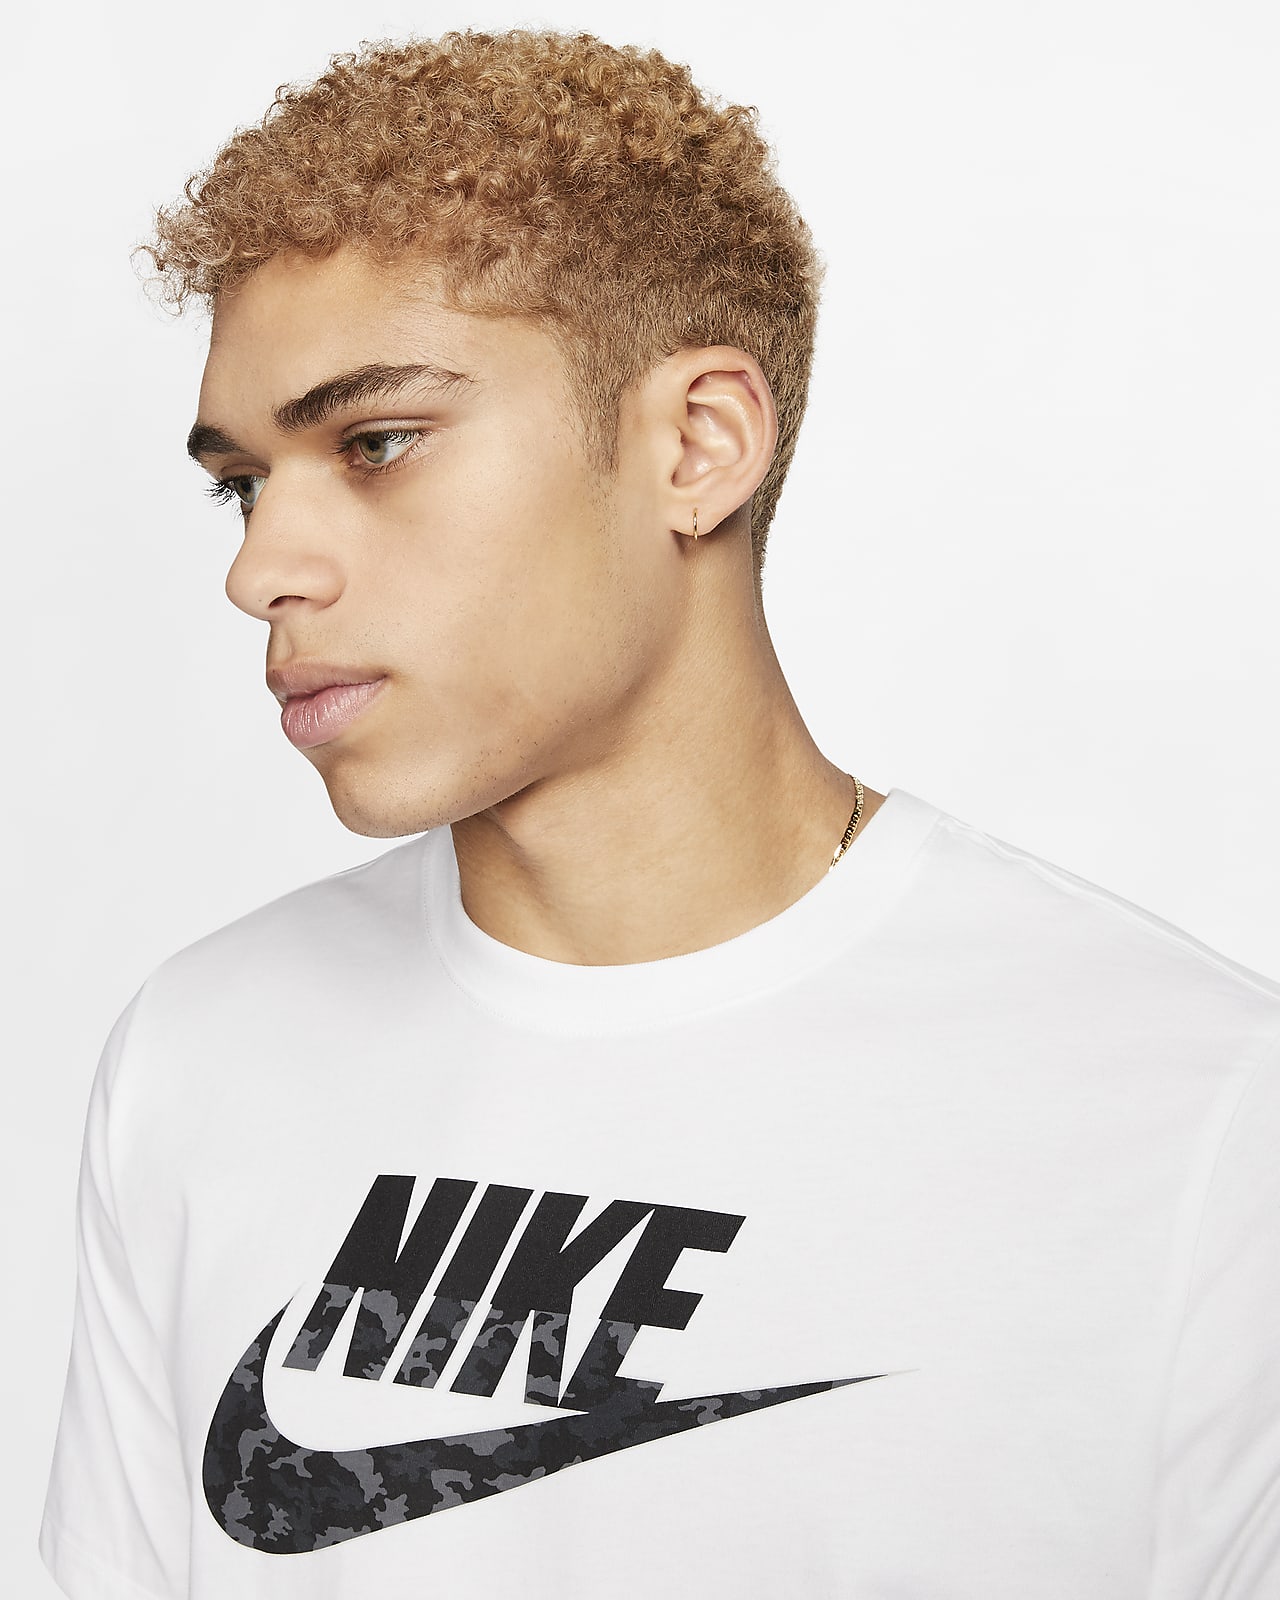 Nike, Tops, Nike Camo T Shirt